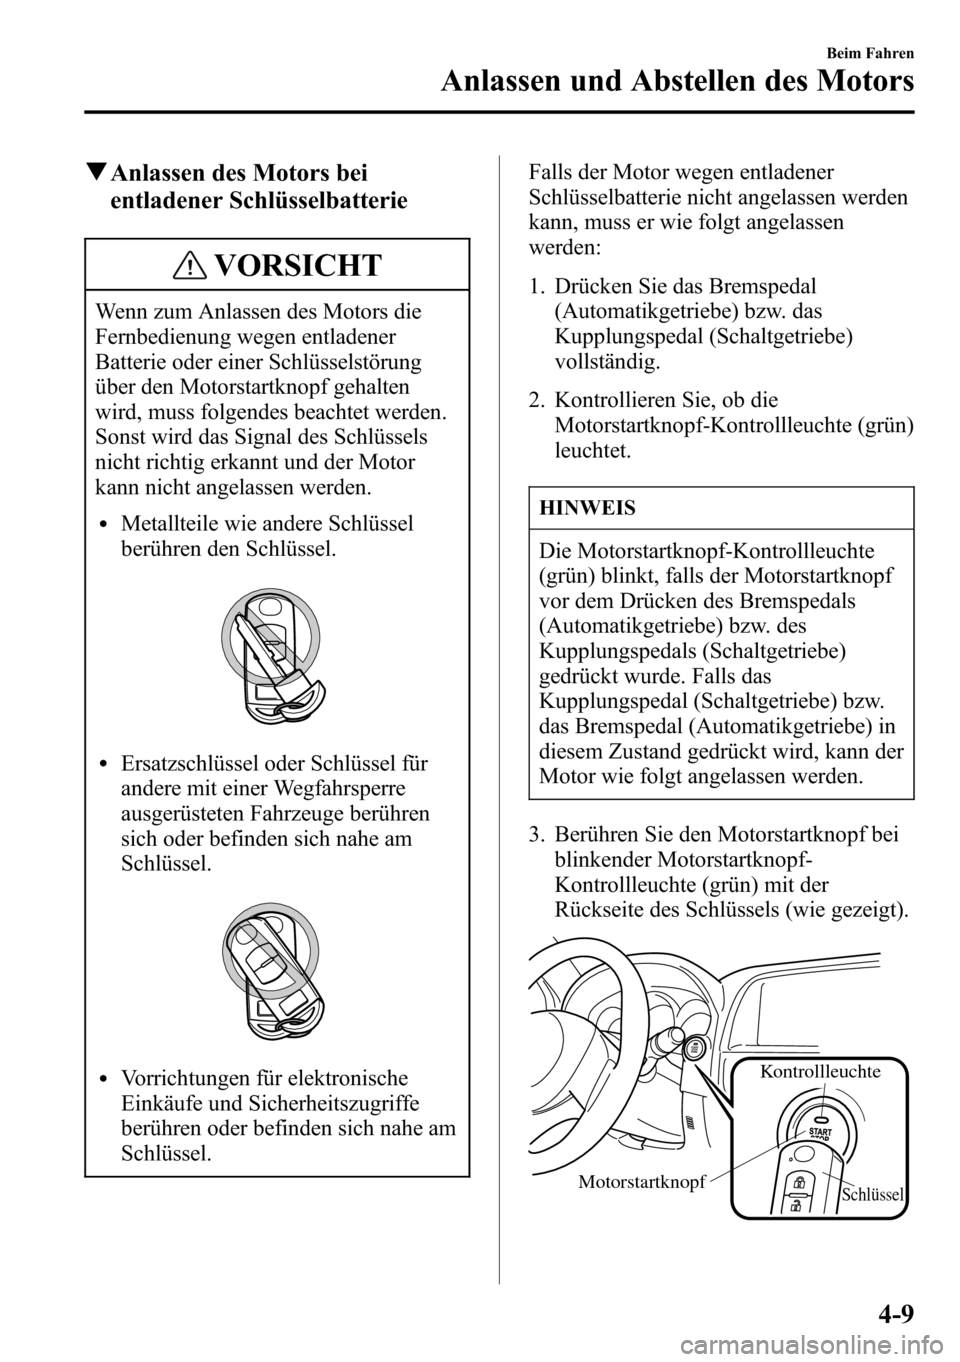 MAZDA MODEL CX-5 2013  Betriebsanleitung (in German) qAnlassen des Motors bei
entladener Schlüsselbatterie
VORSICHT
Wenn zum Anlassen des Motors die
Fernbedienung wegen entladener
Batterie oder einer Schlüsselstörung
über den Motorstartknopf gehalte